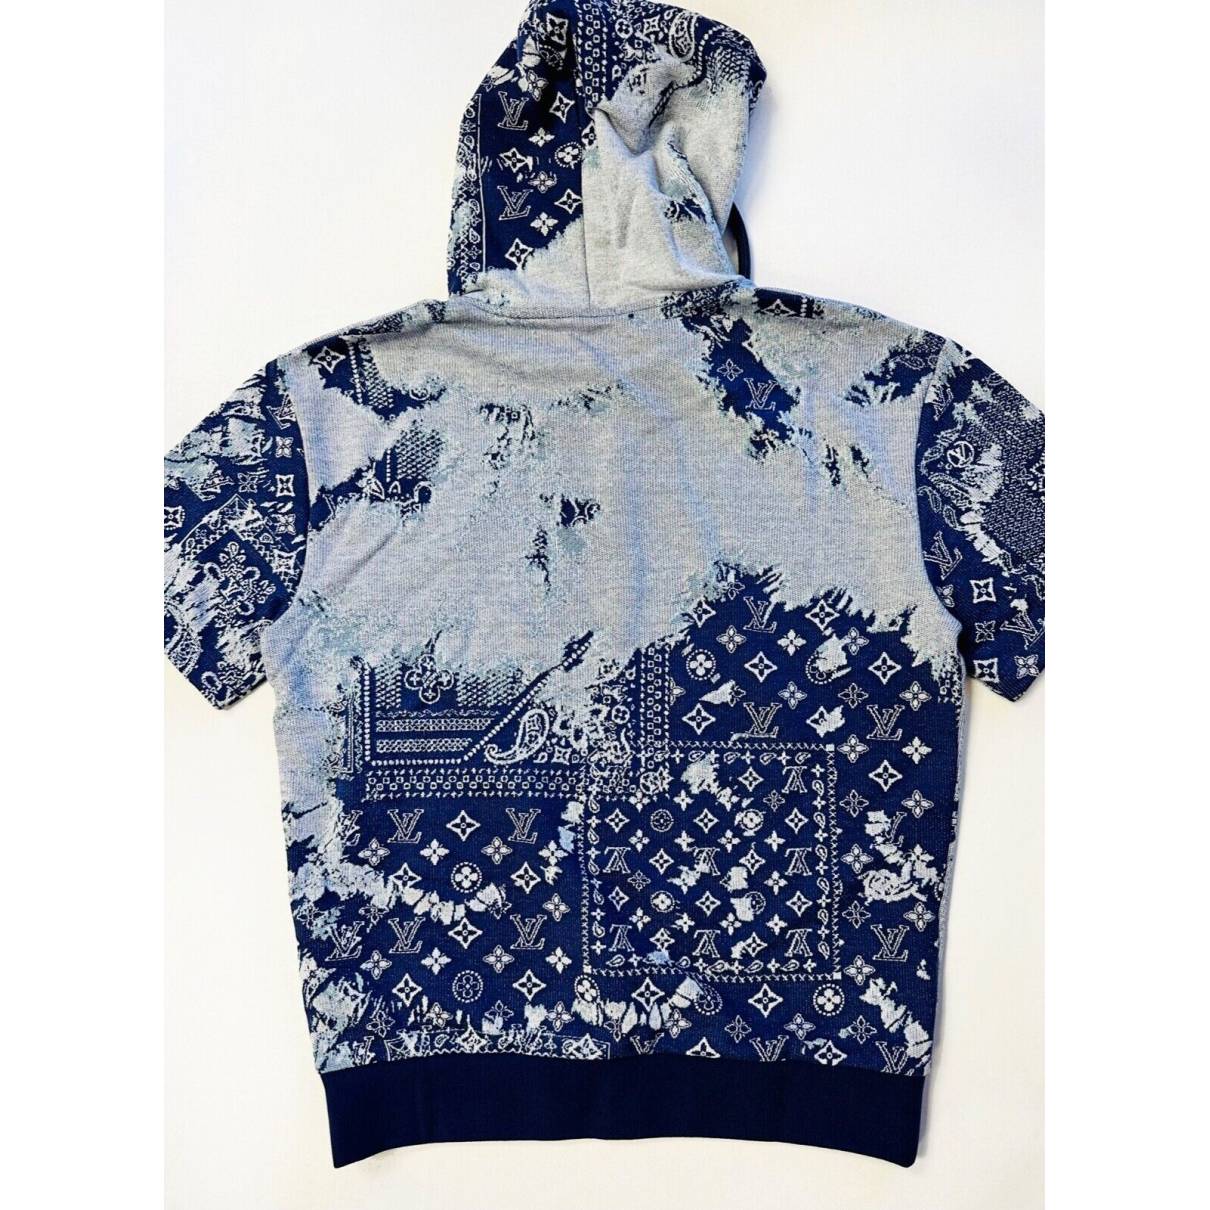 Sweatshirt Louis Vuitton Blue size M International in Cotton - 29080576